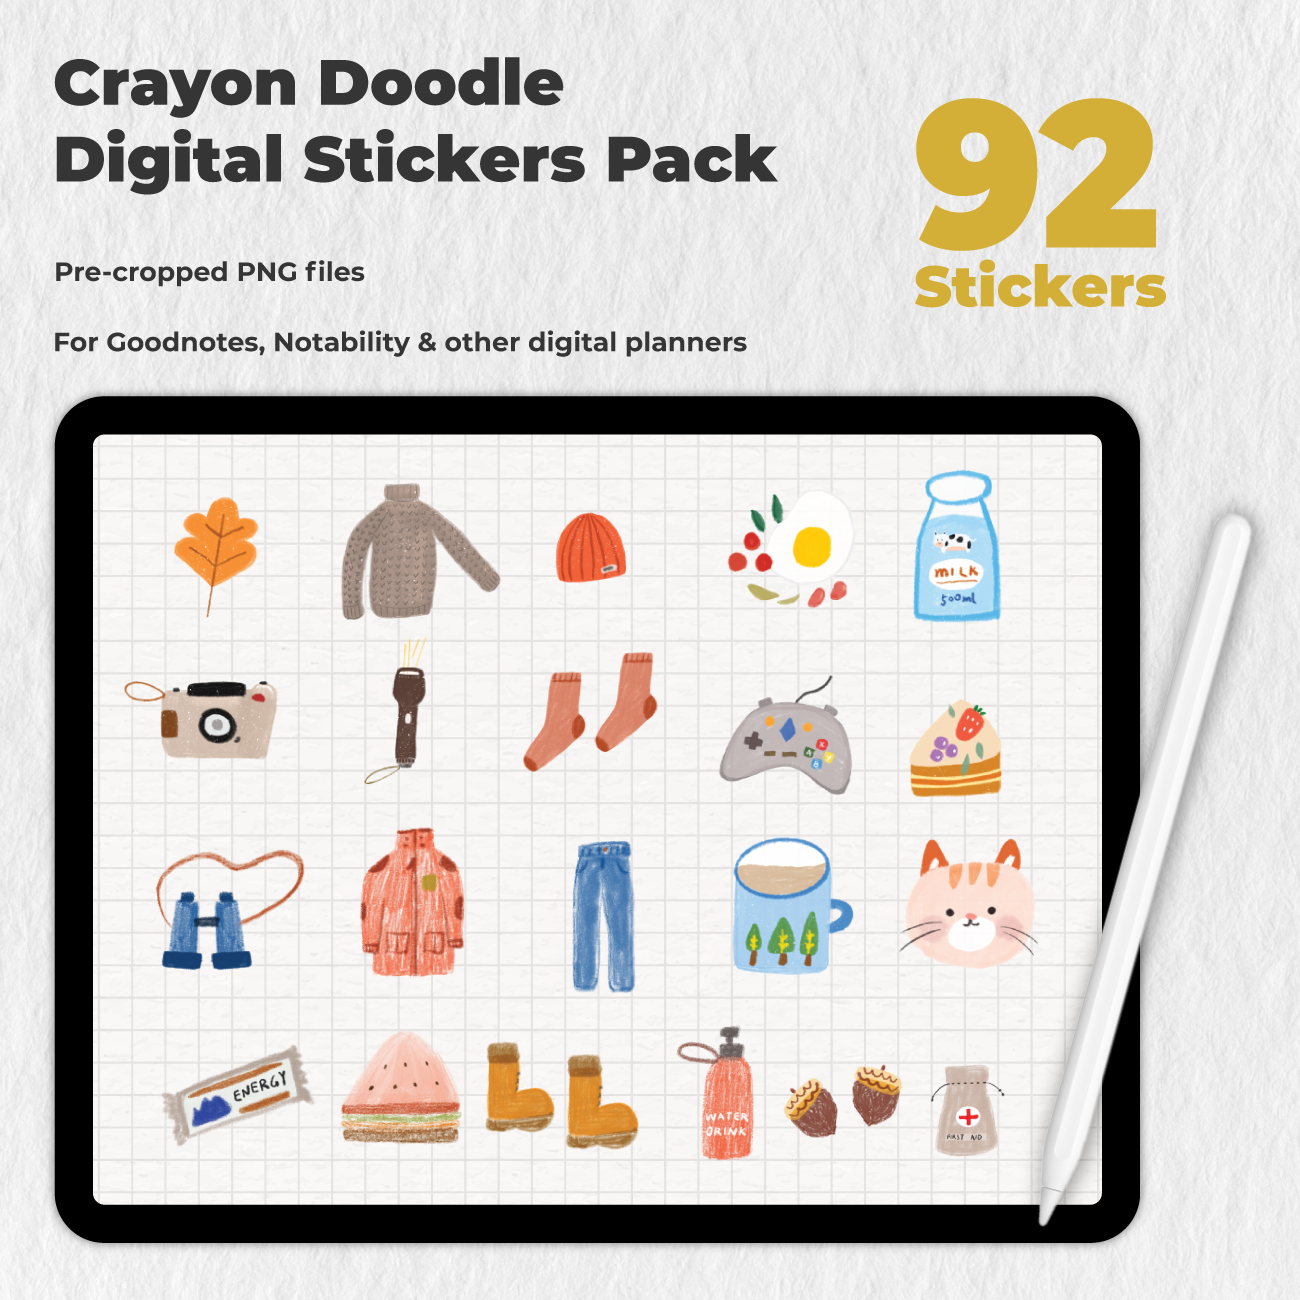 92 Crayon Doodle Digital Stickers